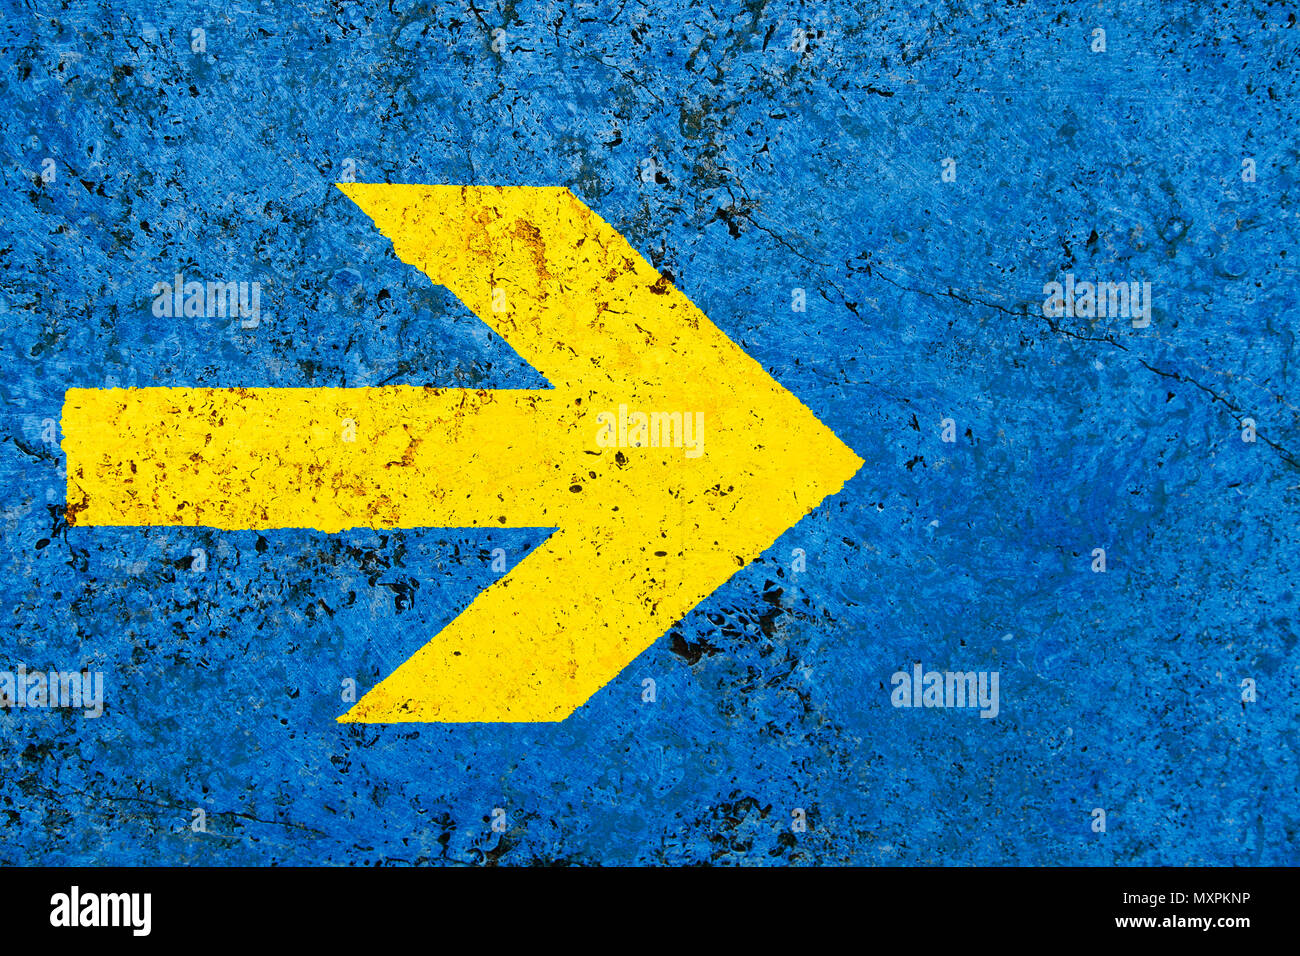 Gelber Pfeil Richtung Schild über lebendige helle blaue Farbe stone wall mit Unebenheiten und Risse als leere rustikal und einfach Hintergrund Textur spa Stockfoto